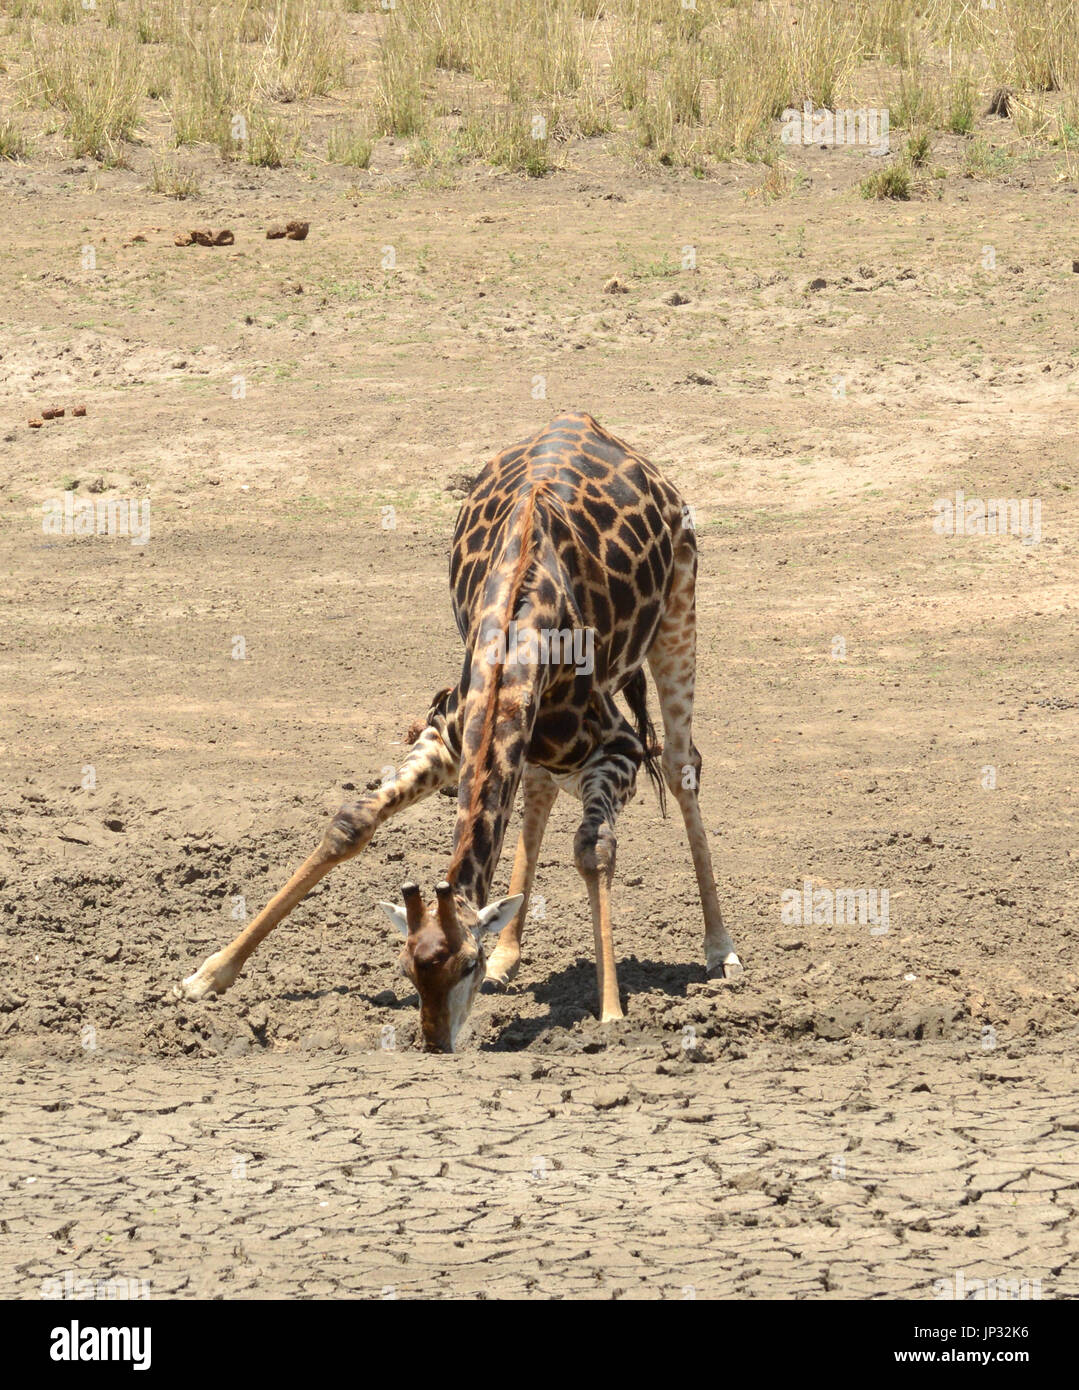 Girafe essayant de trouver de l'eau dans la zone aride d'Afrique du Sud. Banque D'Images